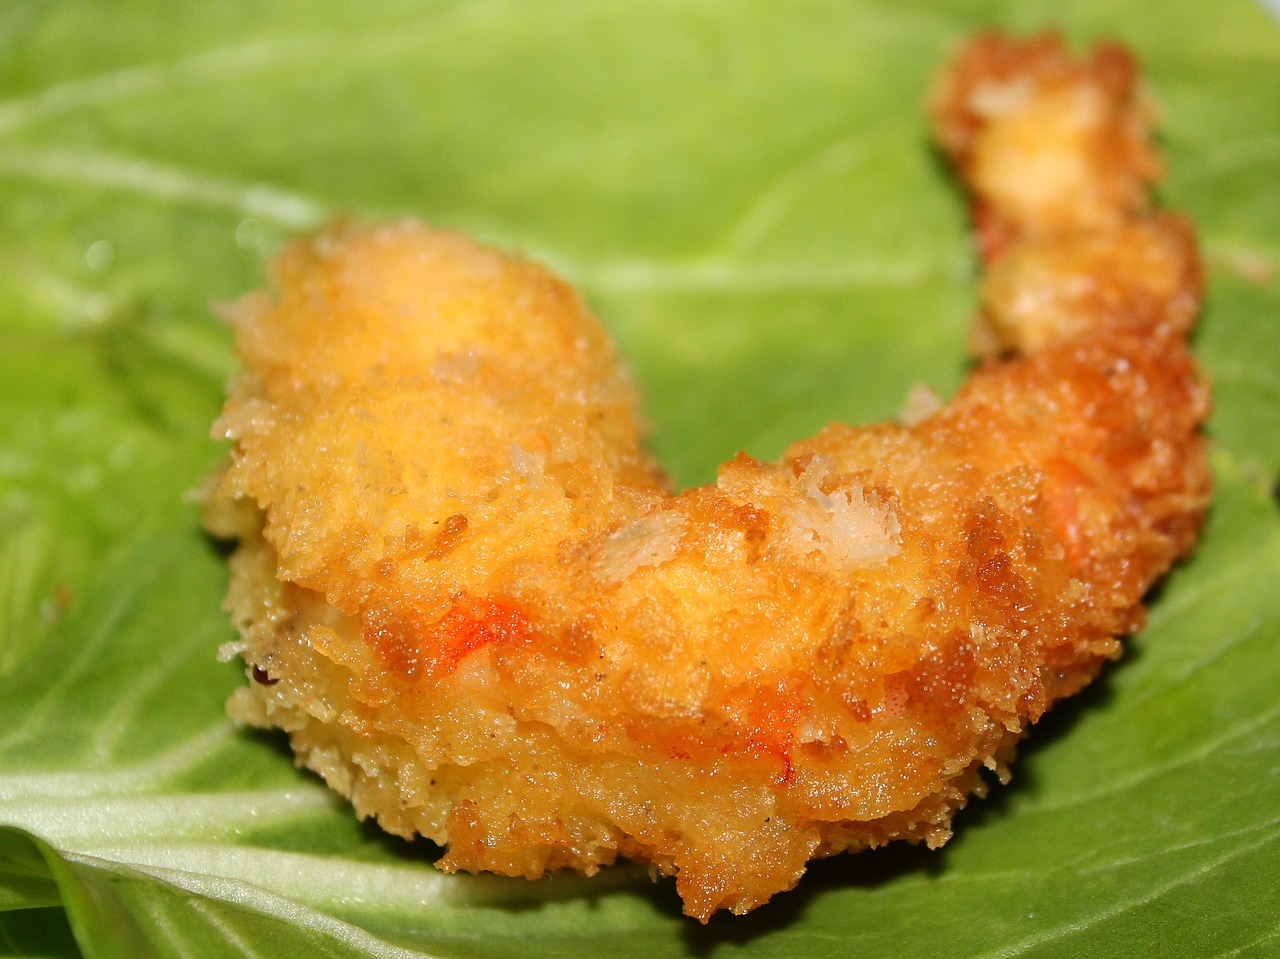 A piece of fried shrimp